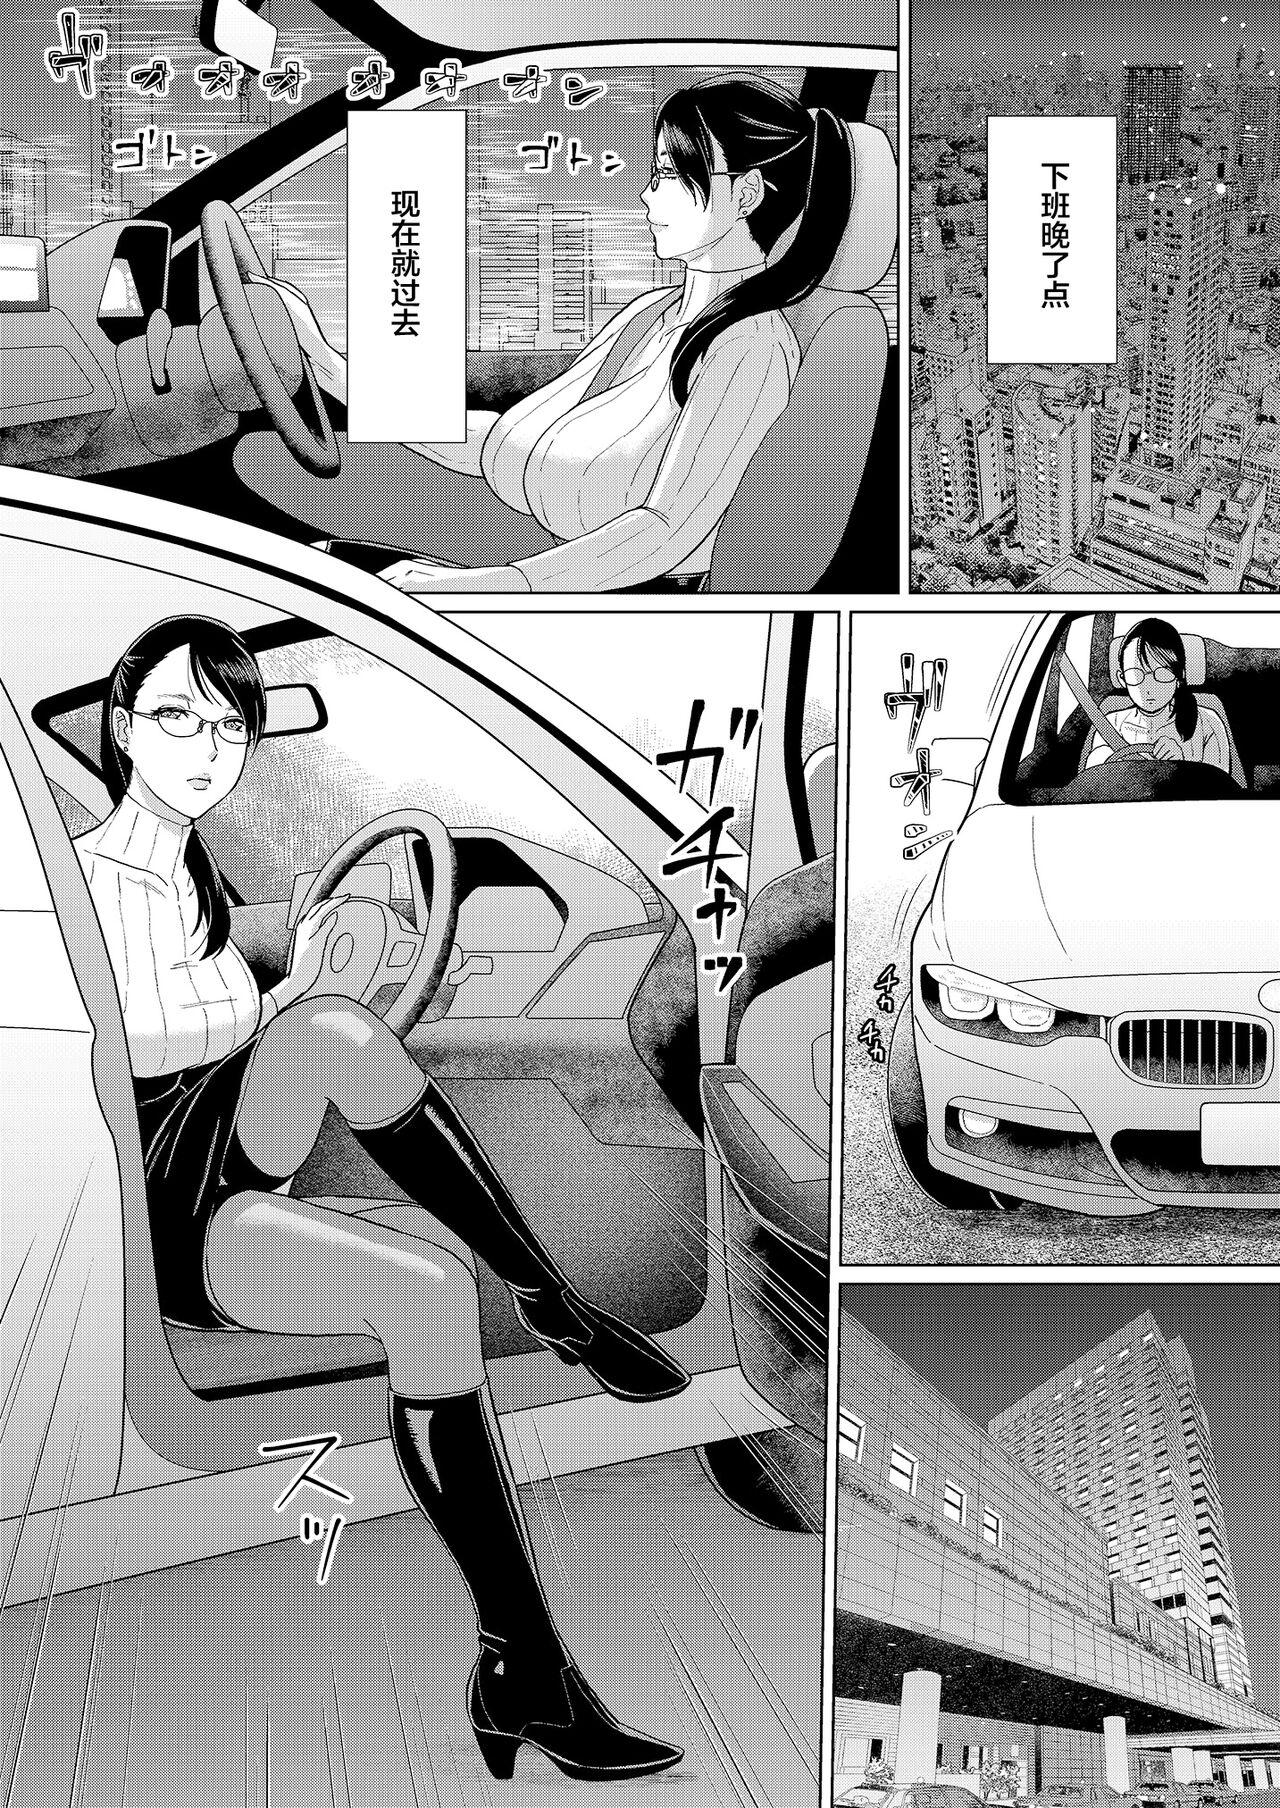 Masterbation Joi K no Himitsu vol. 1 - Original Sexo - Page 6